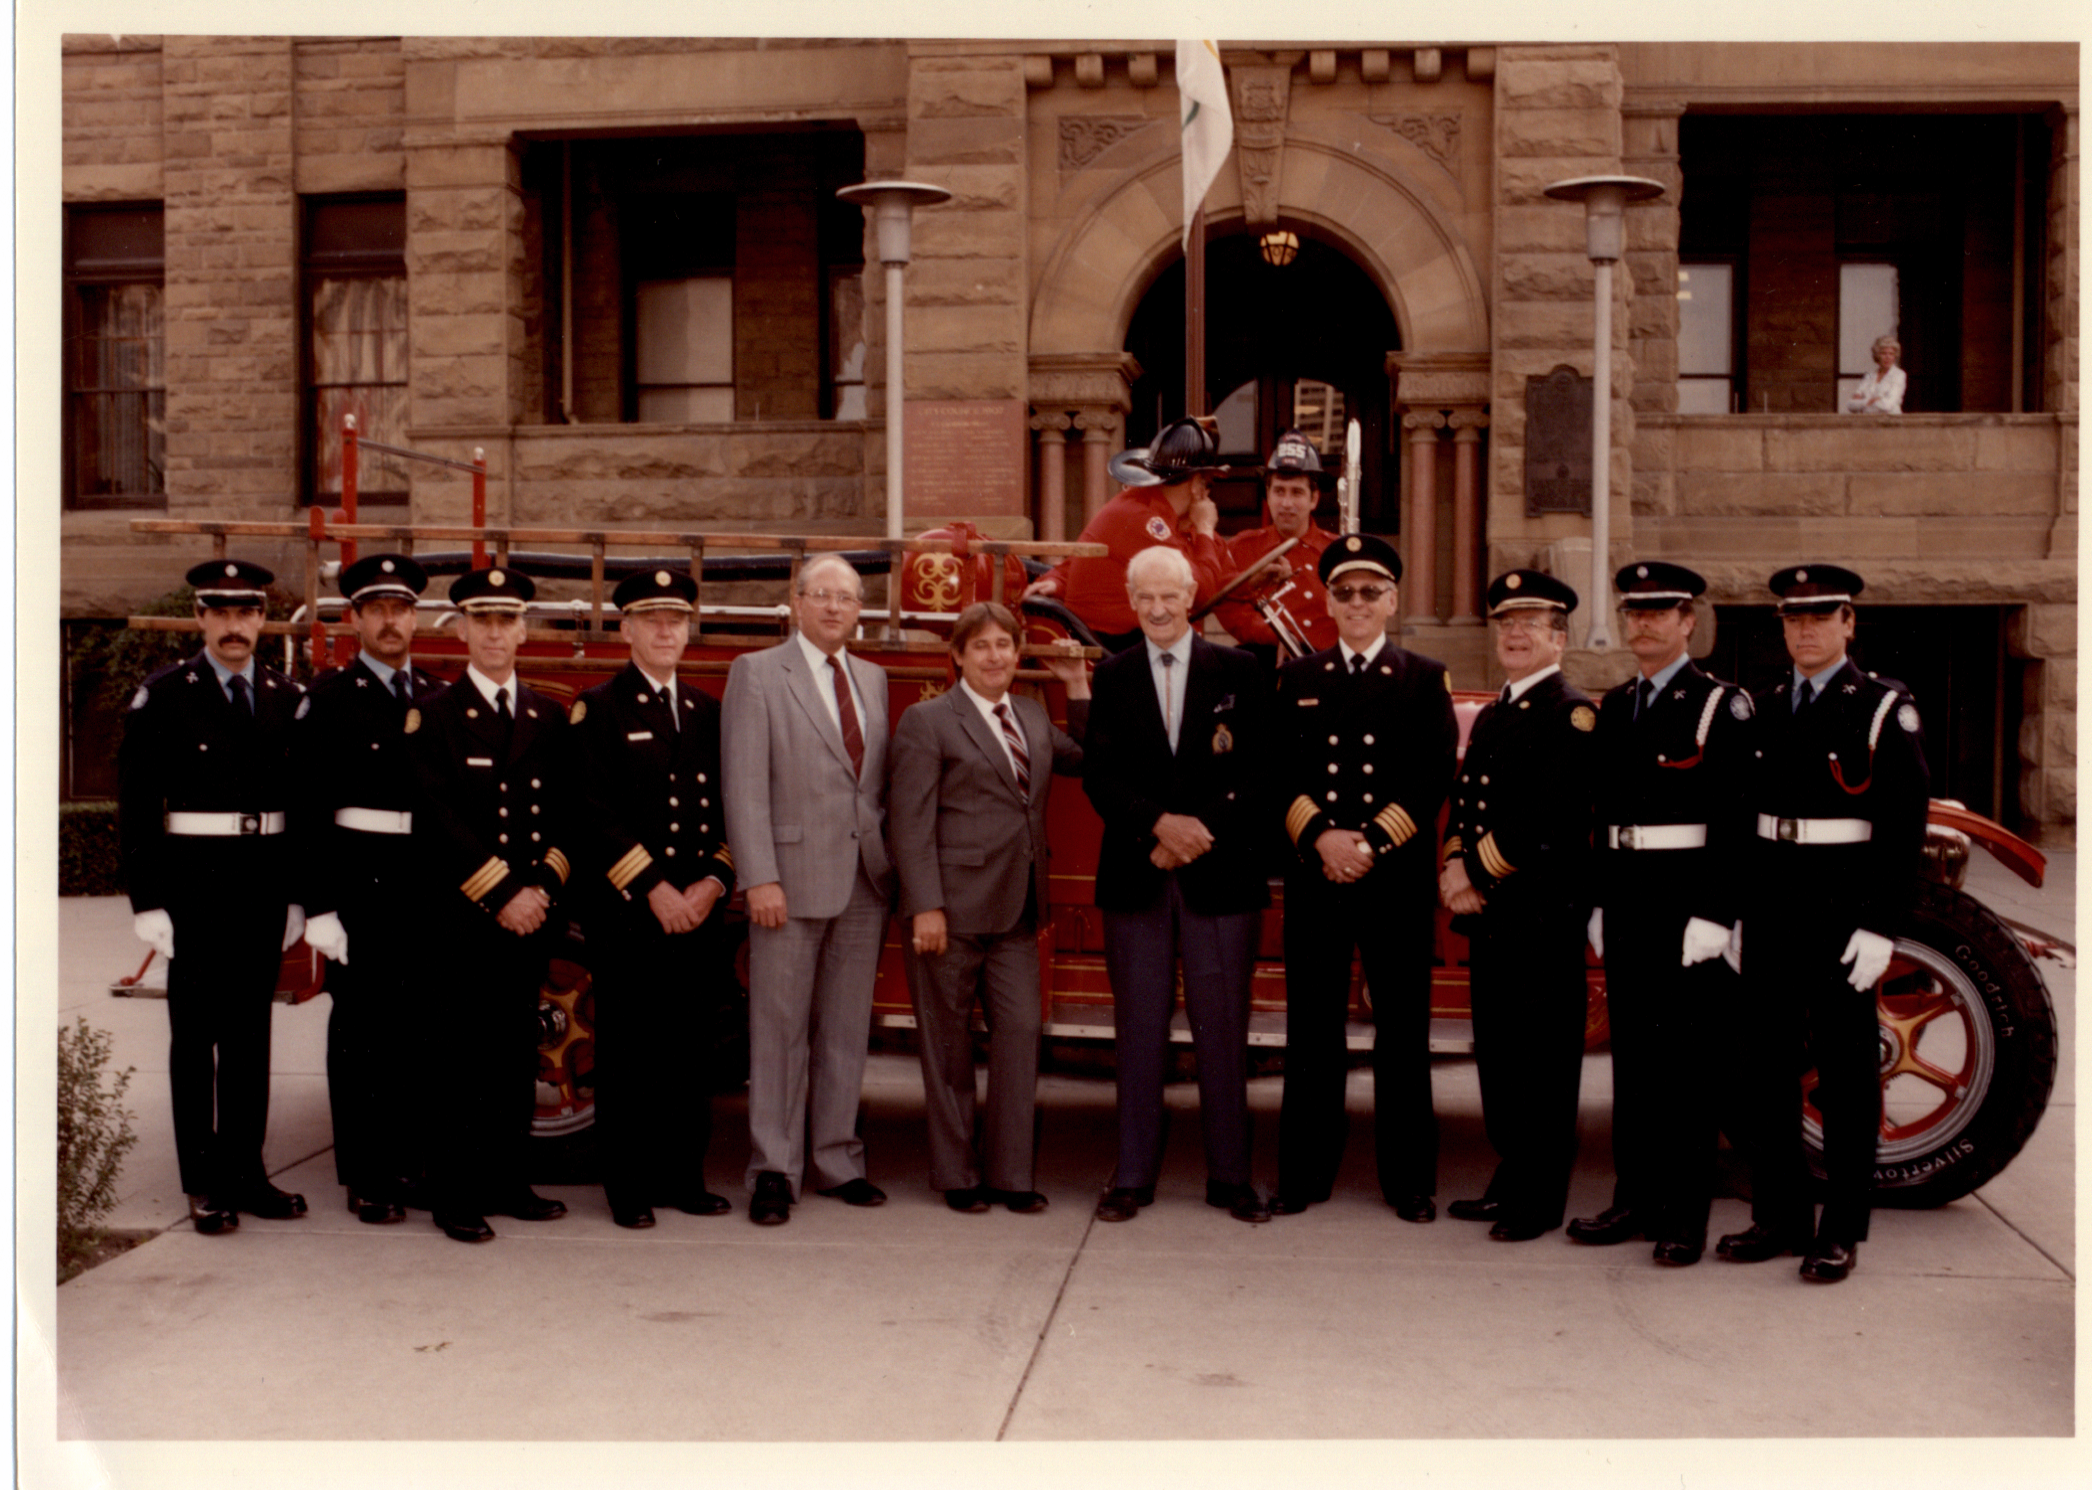 Huit membres de la garde d’honneur avec d’anciens maires, en habit, devant un camion de pompier d’époque et l’hôtel de ville en grès